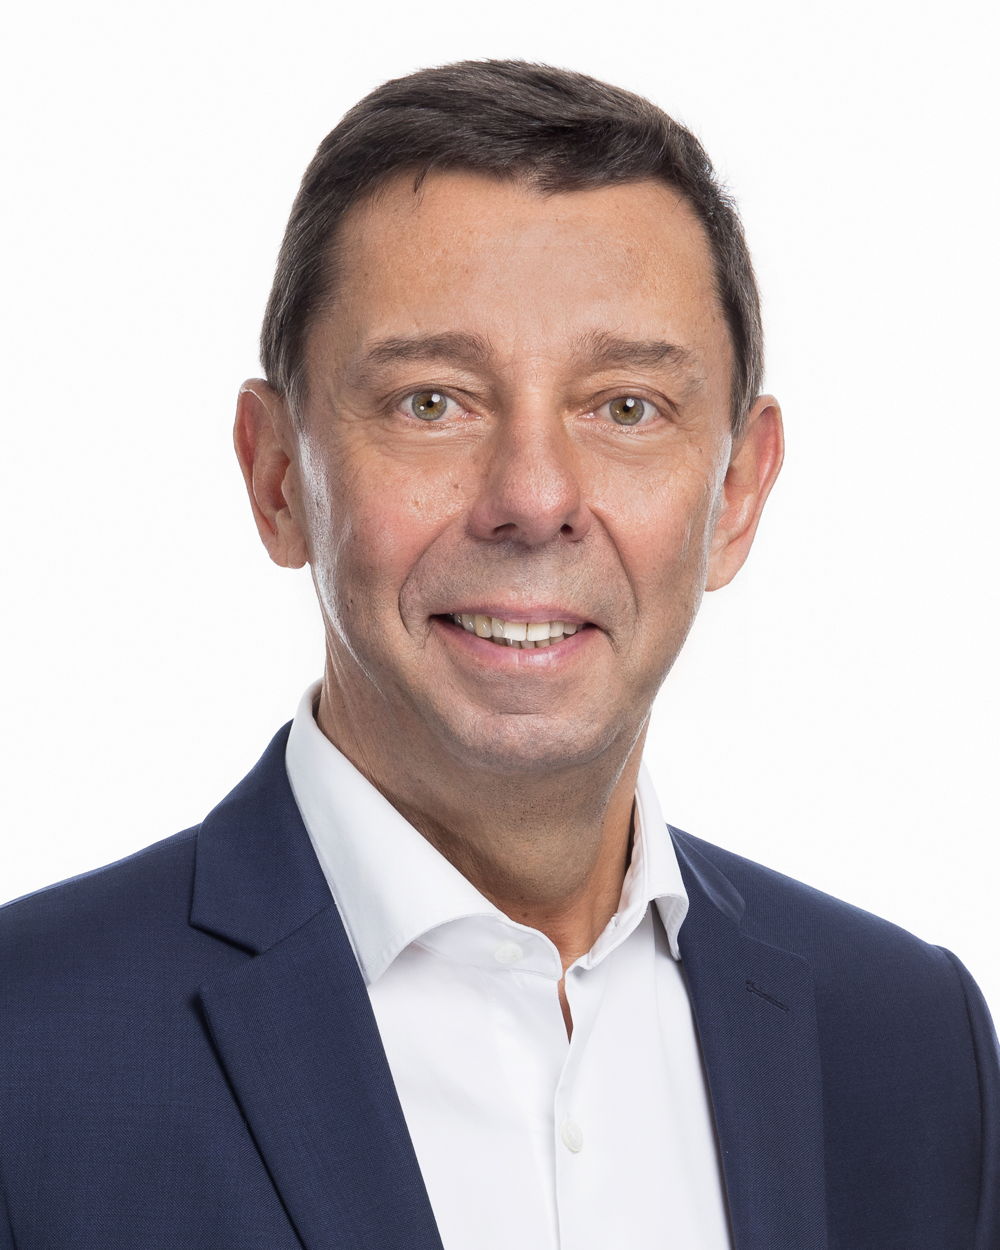 CEO Arval - Alain van Groenendael